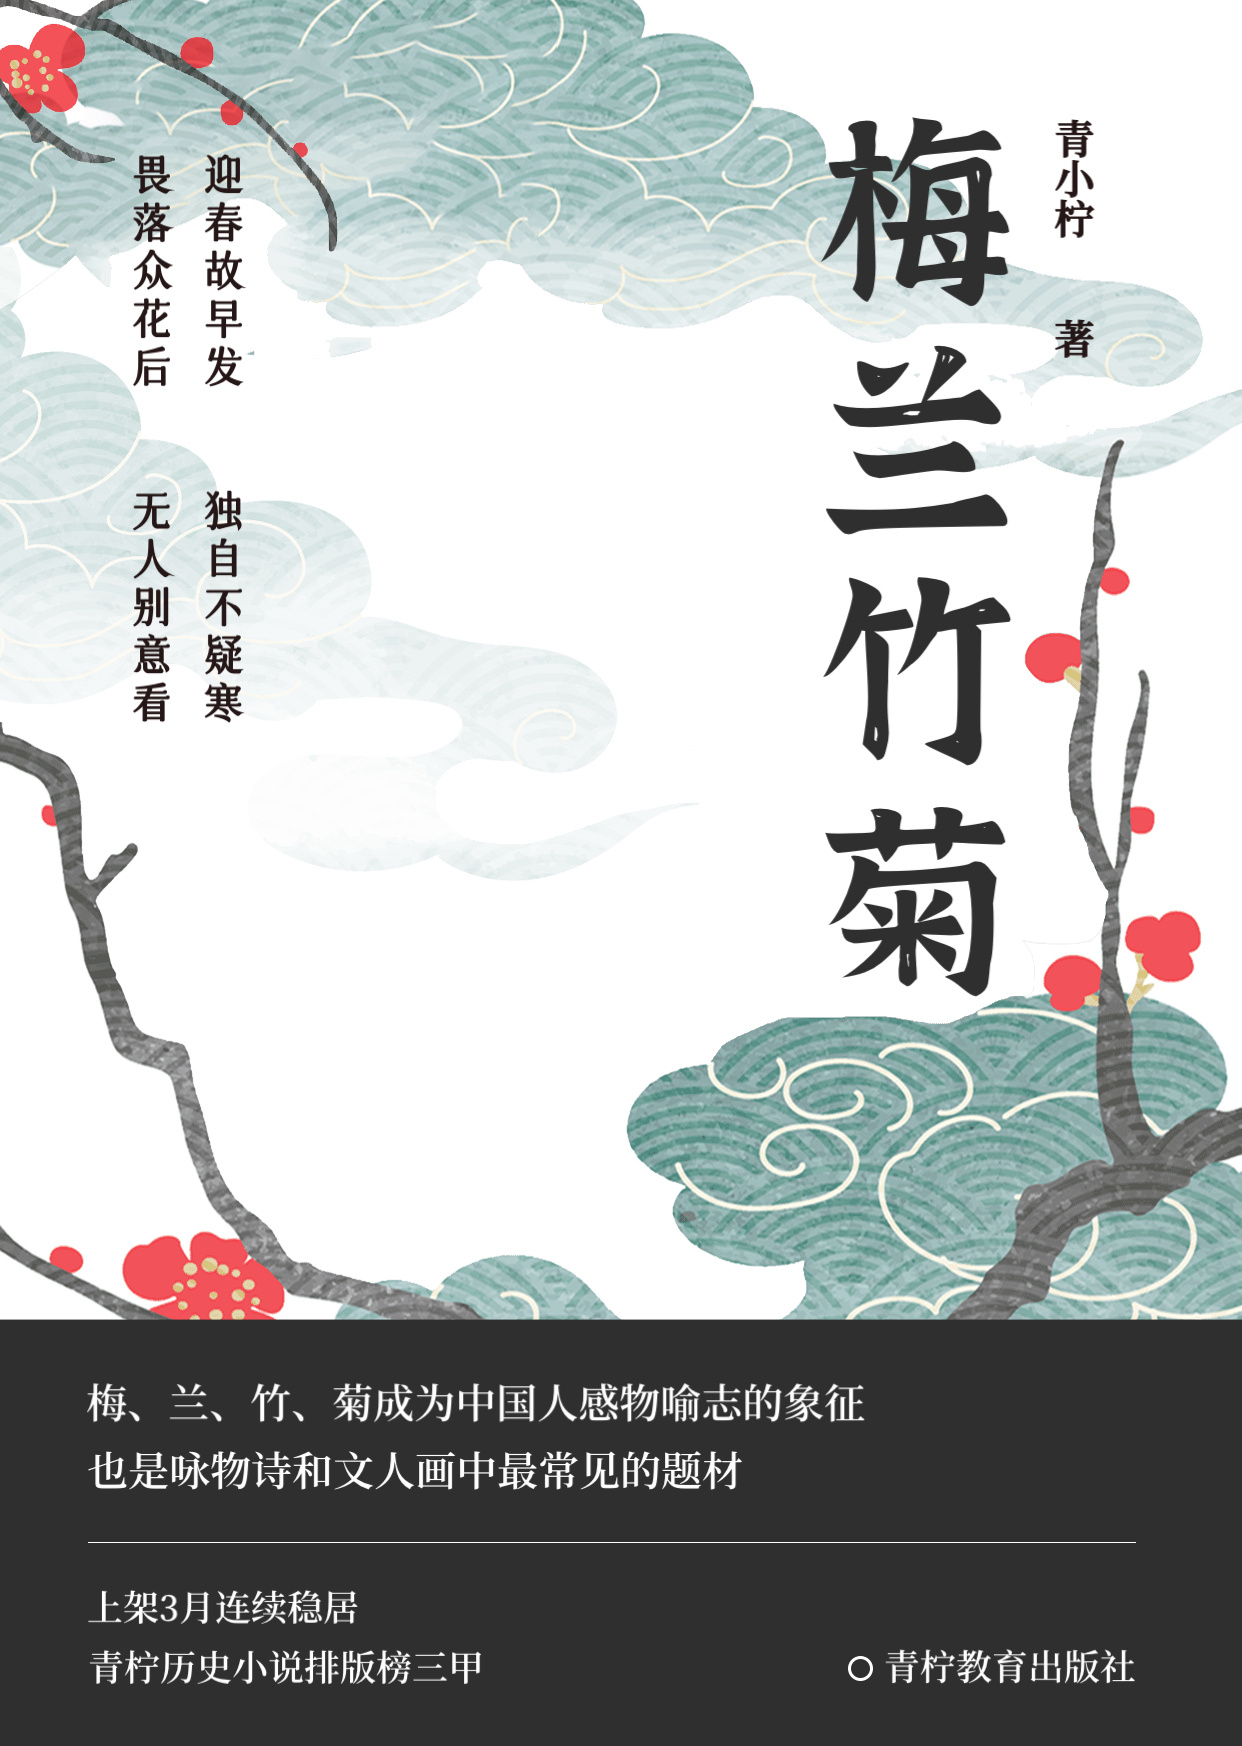 中国风现代文学书籍封面